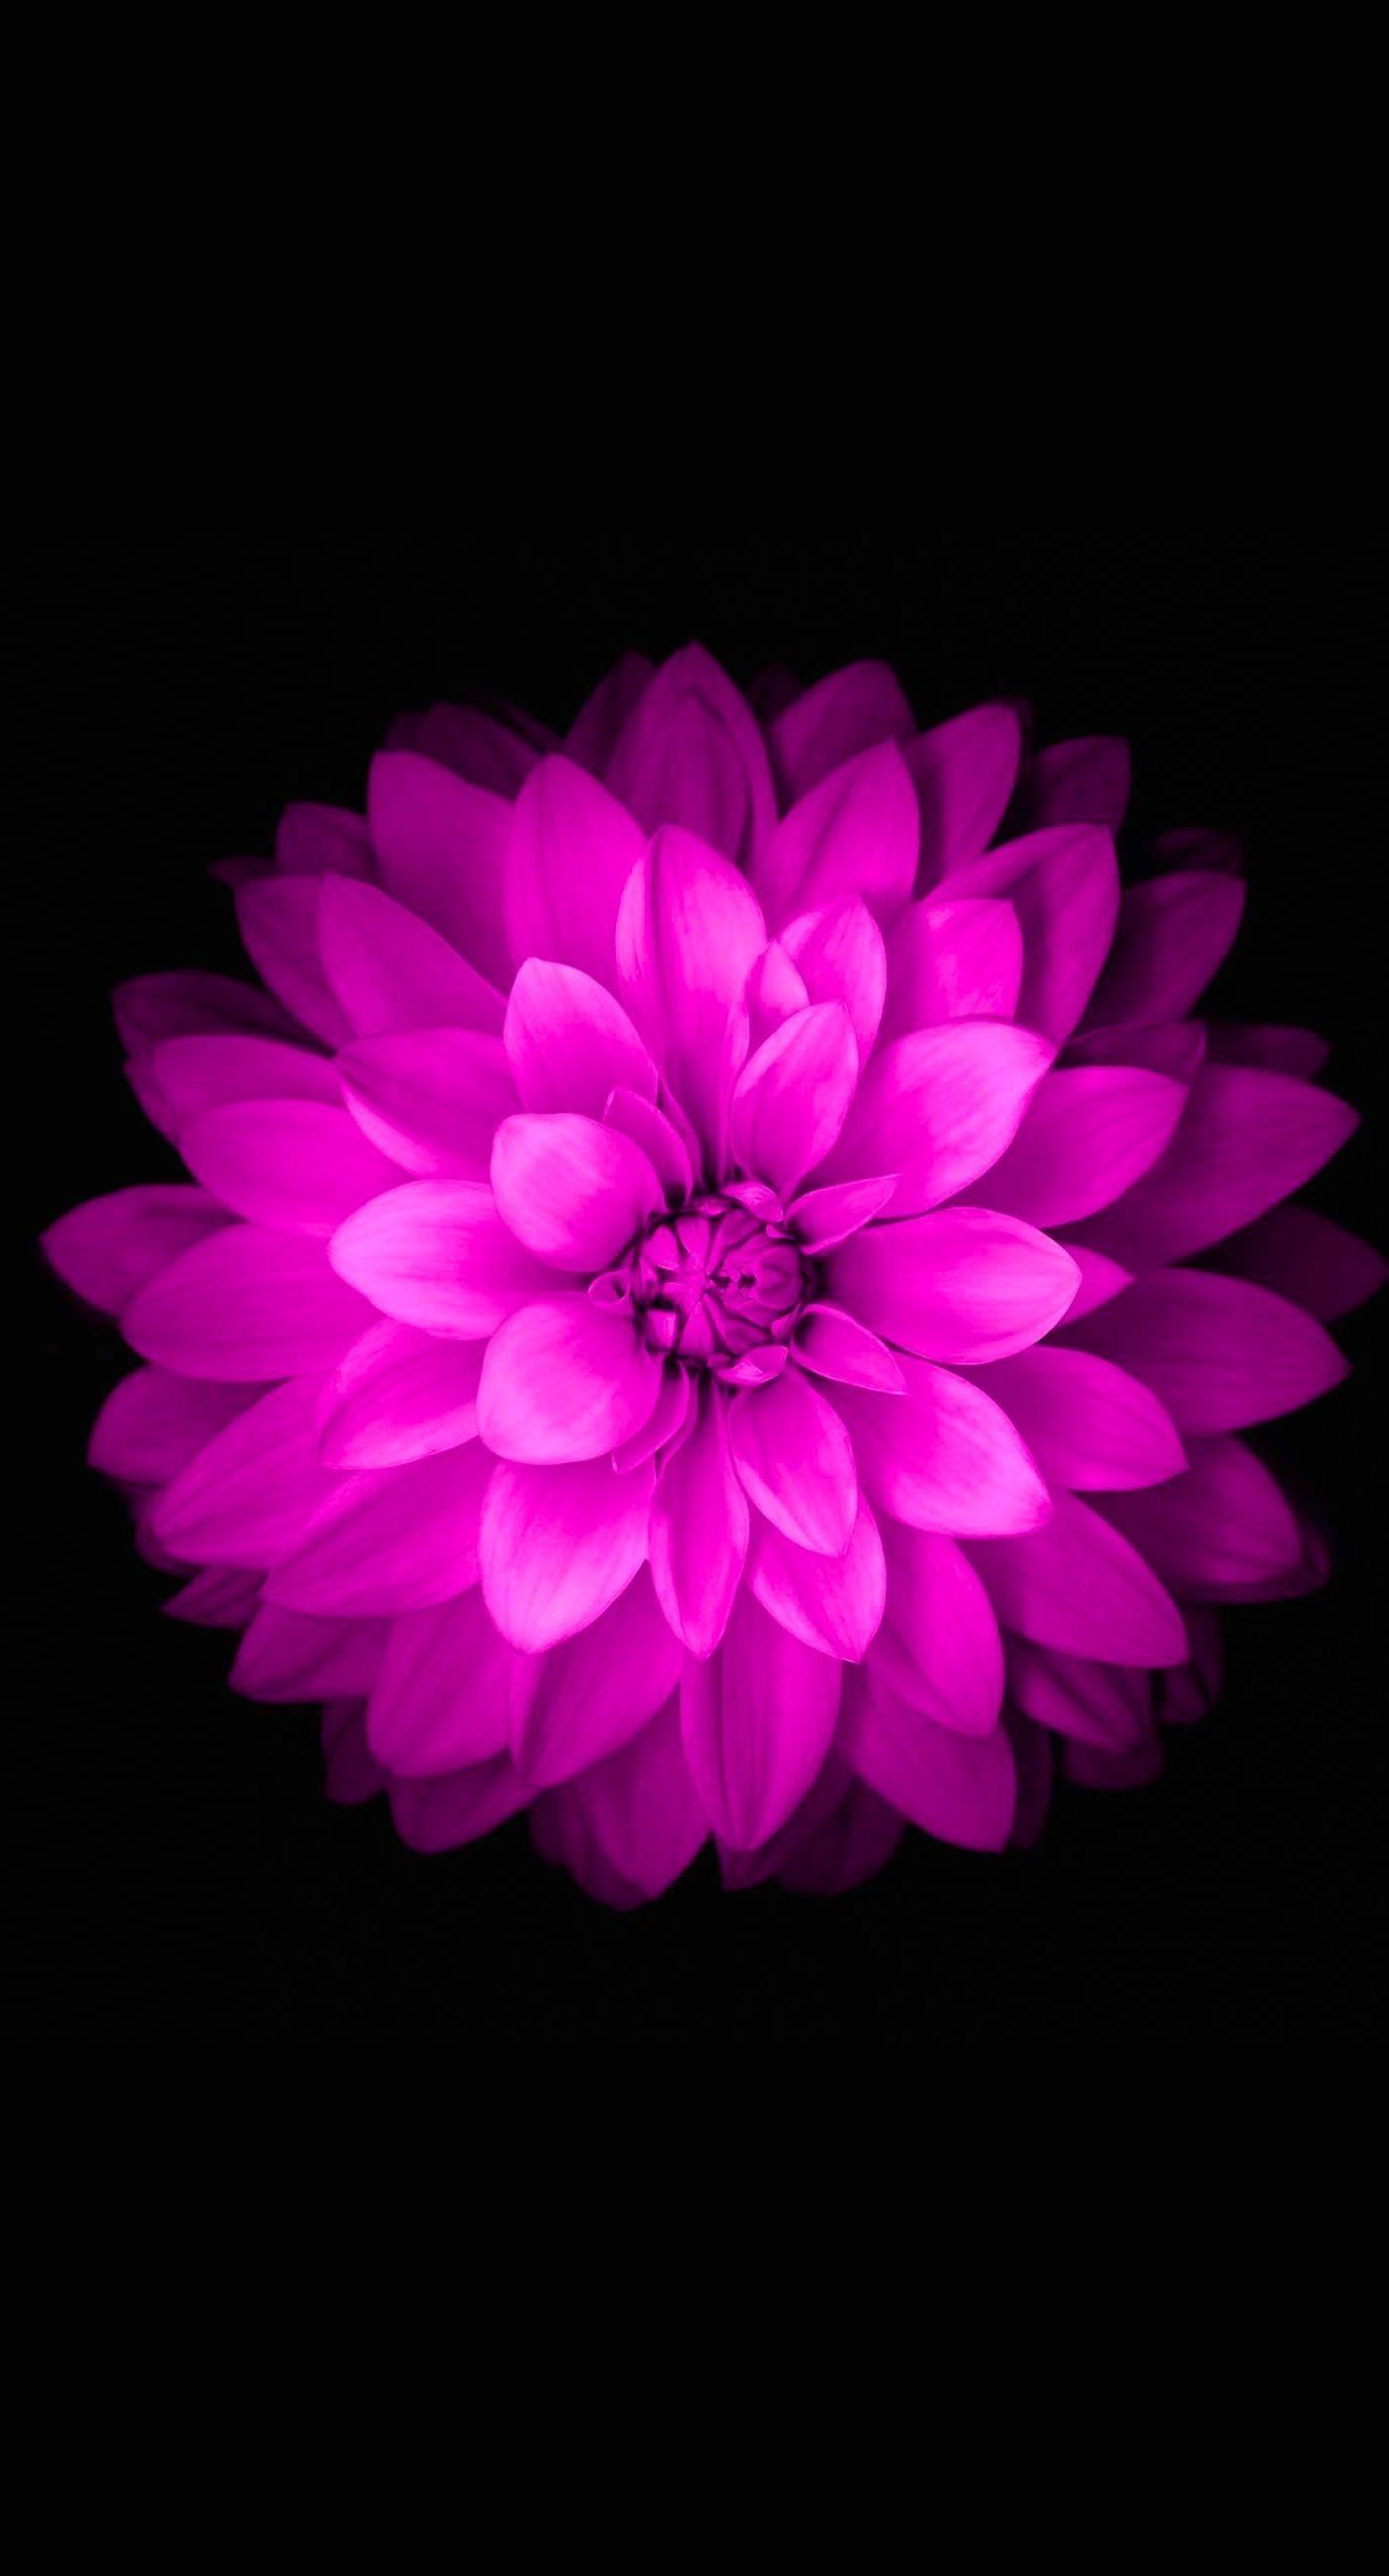 Purple Flower iPhone Wallpapers - Top Free Purple Flower iPhone ...